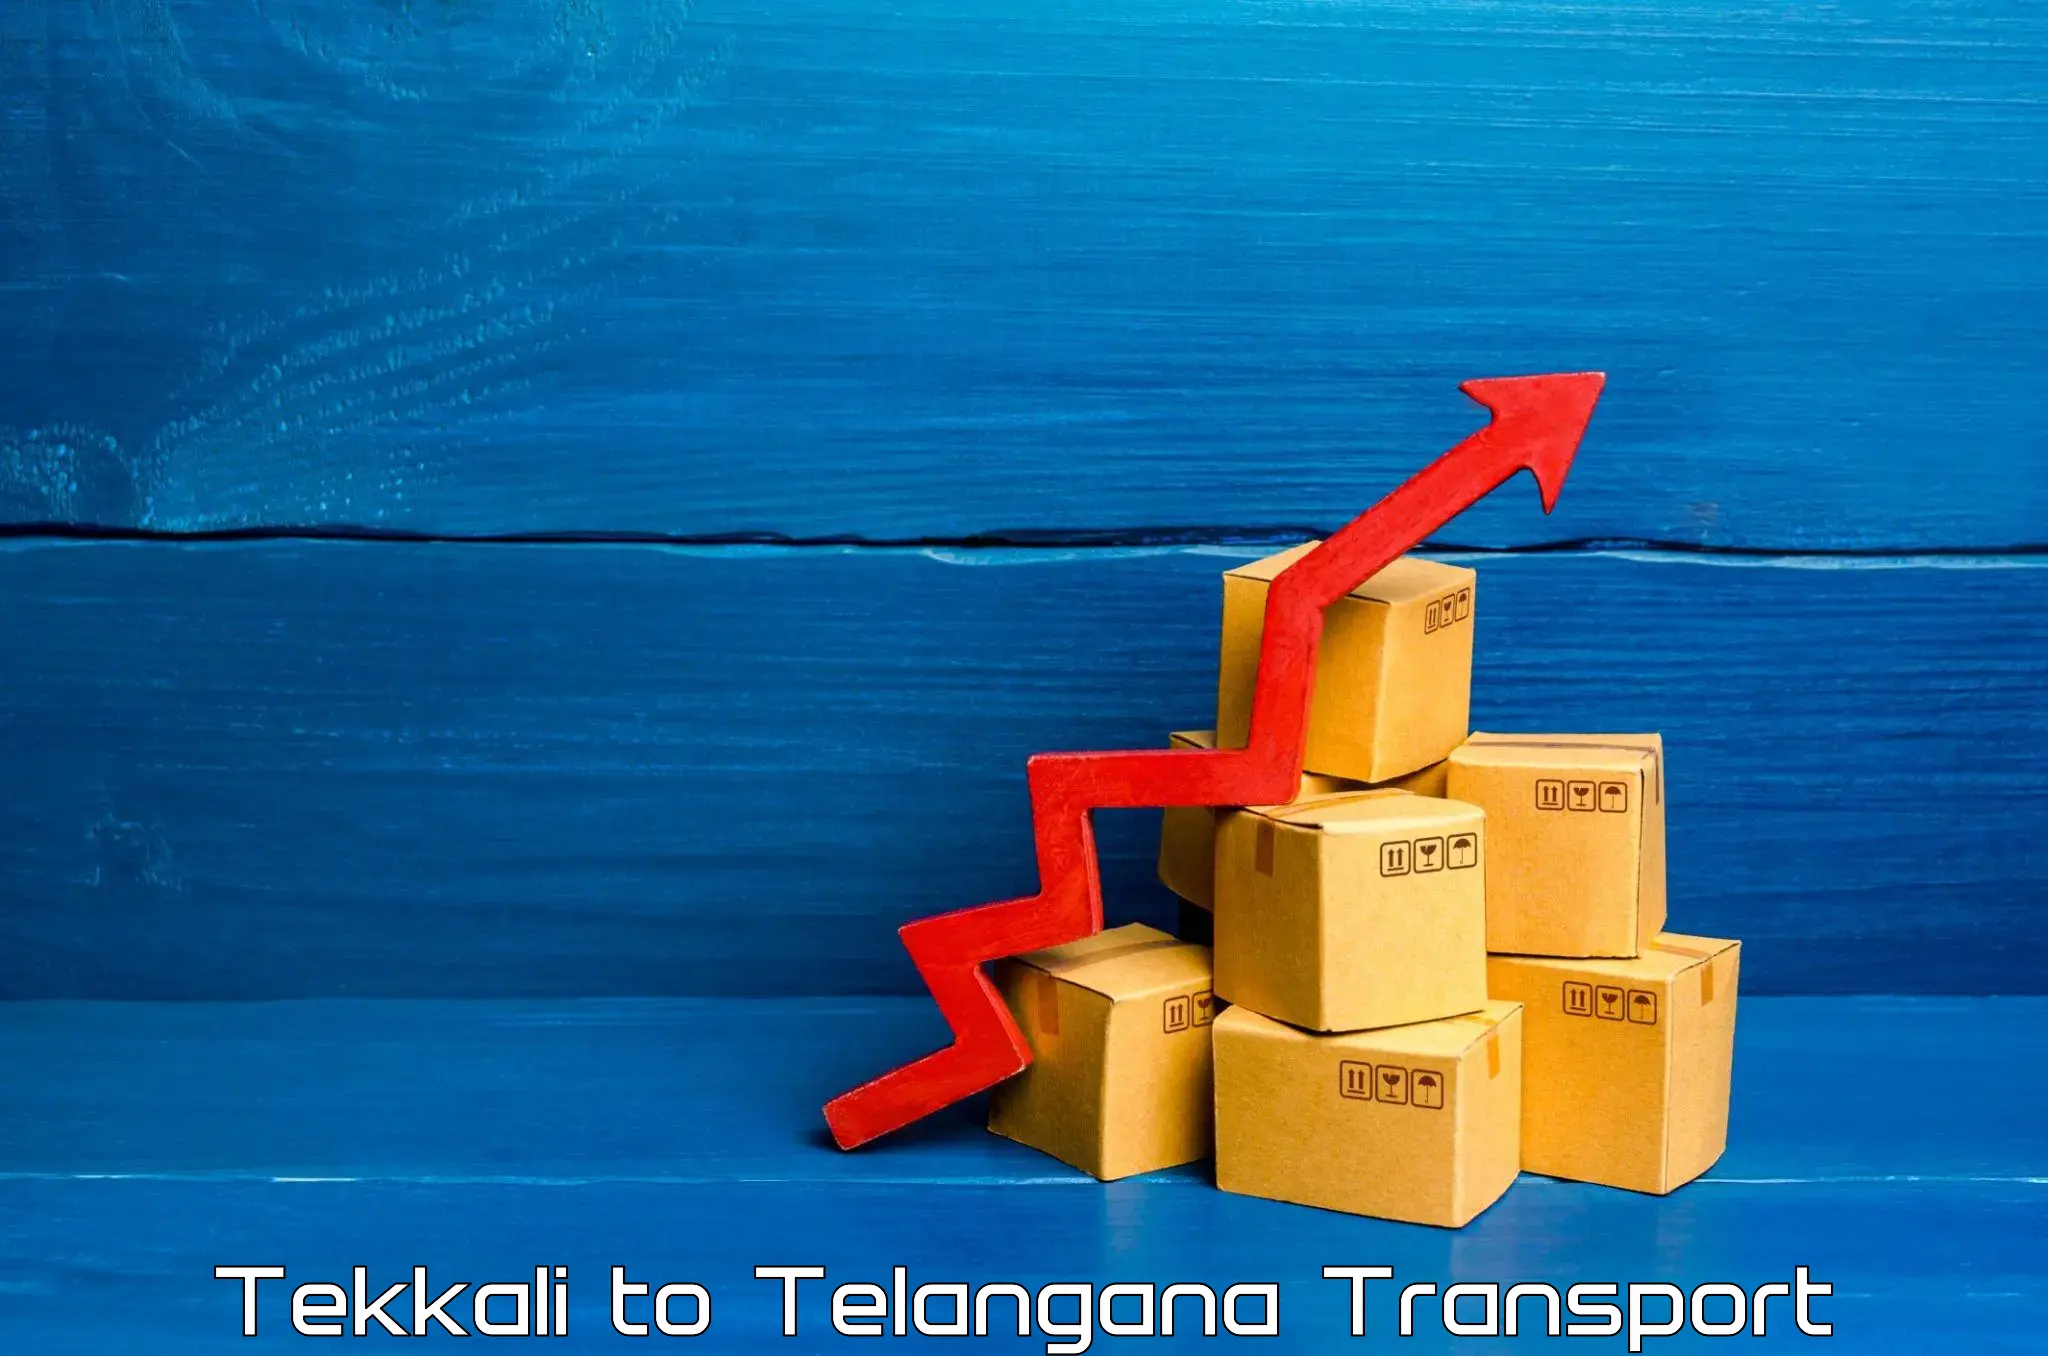 Nearest transport service Tekkali to Tallada